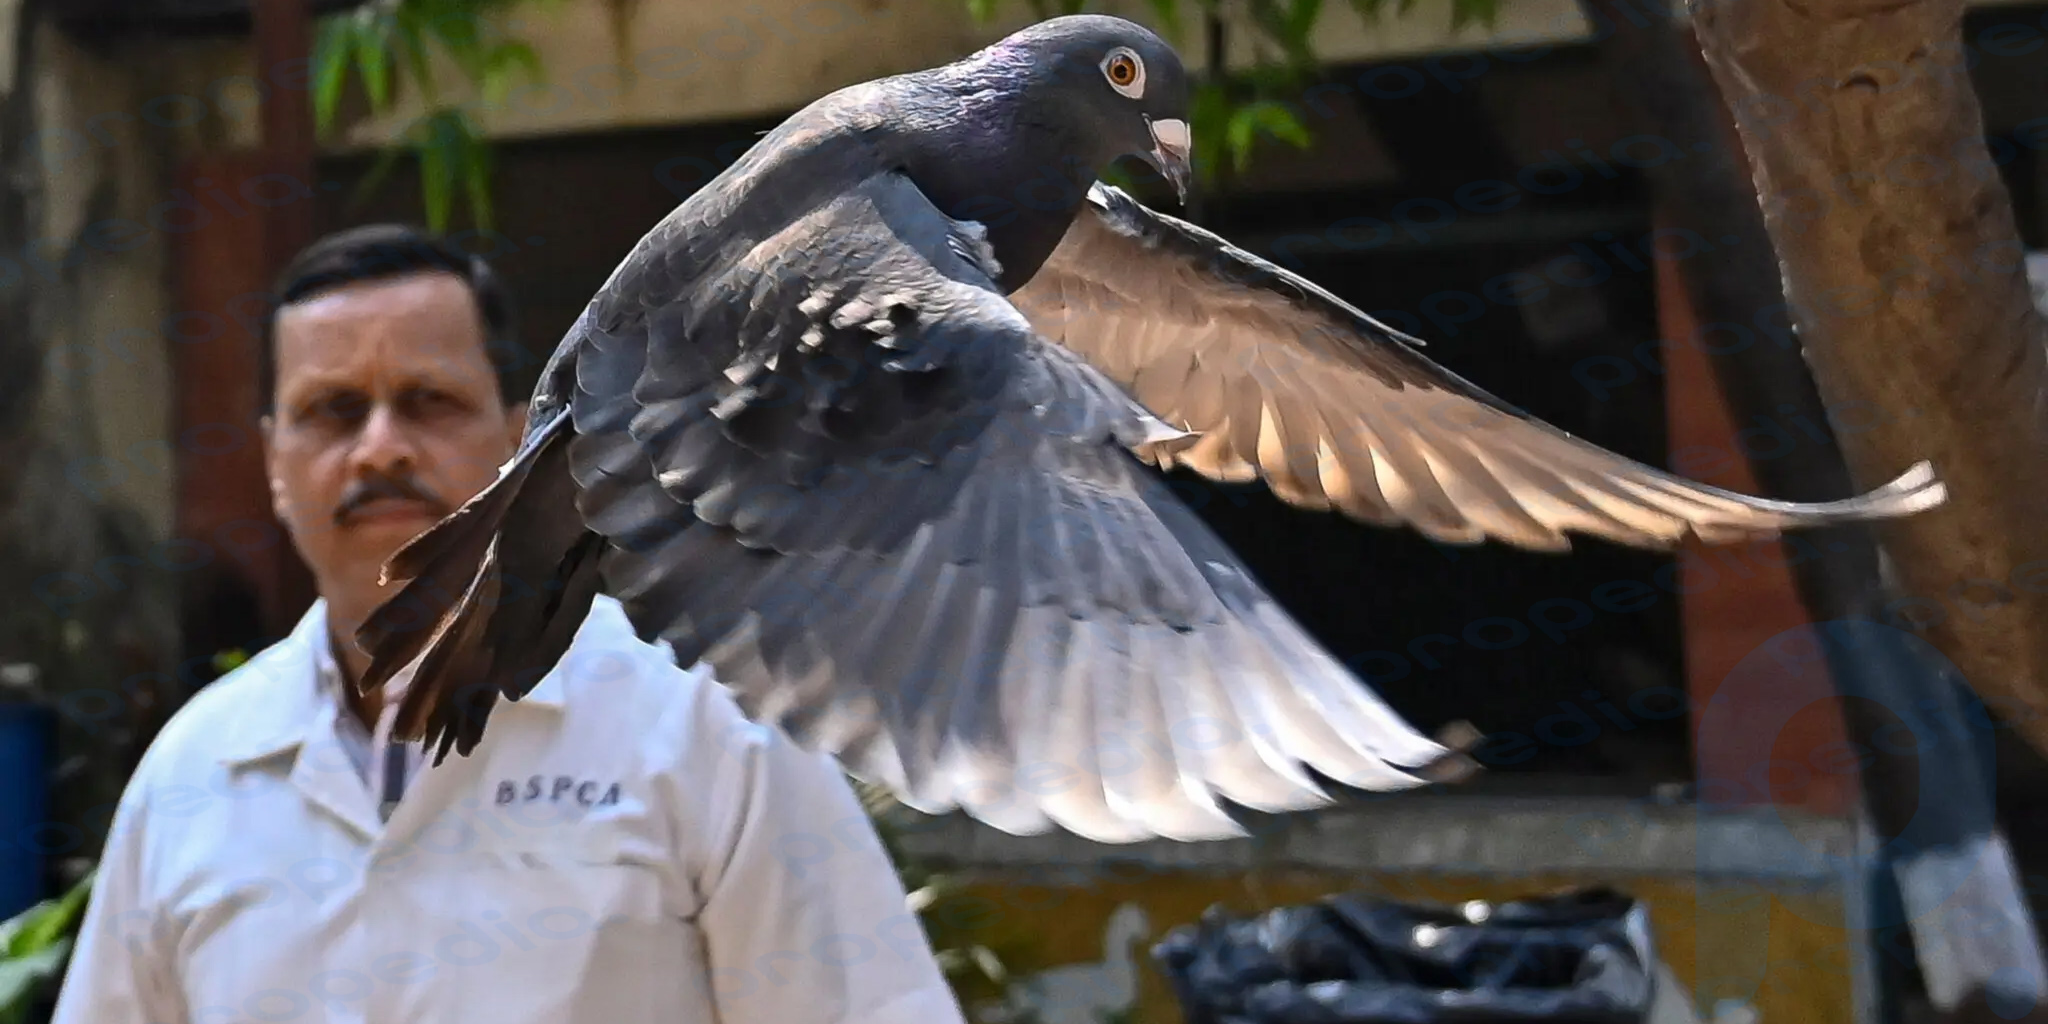 Hindistan'da bir güvercin tutuklandı. Casuslukla suçlandı ama 8 ay sonra serbest bırakıldı